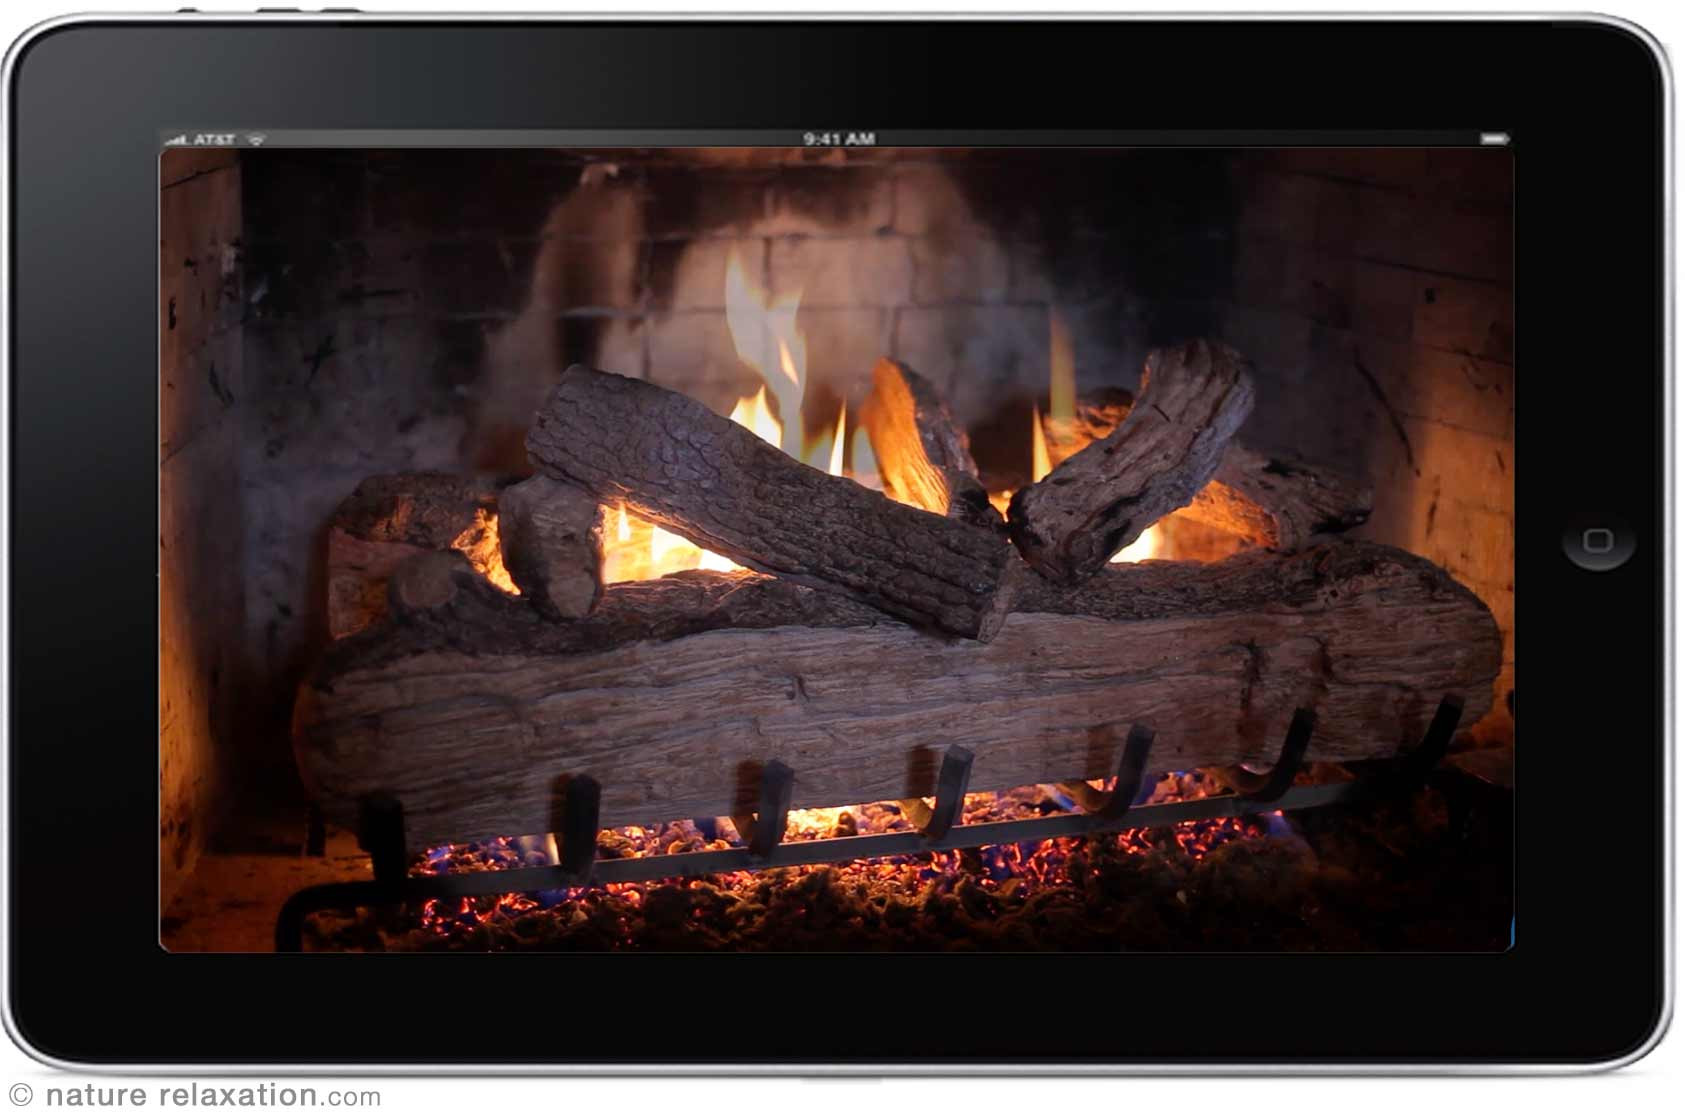 free fireplace screensaver no ads